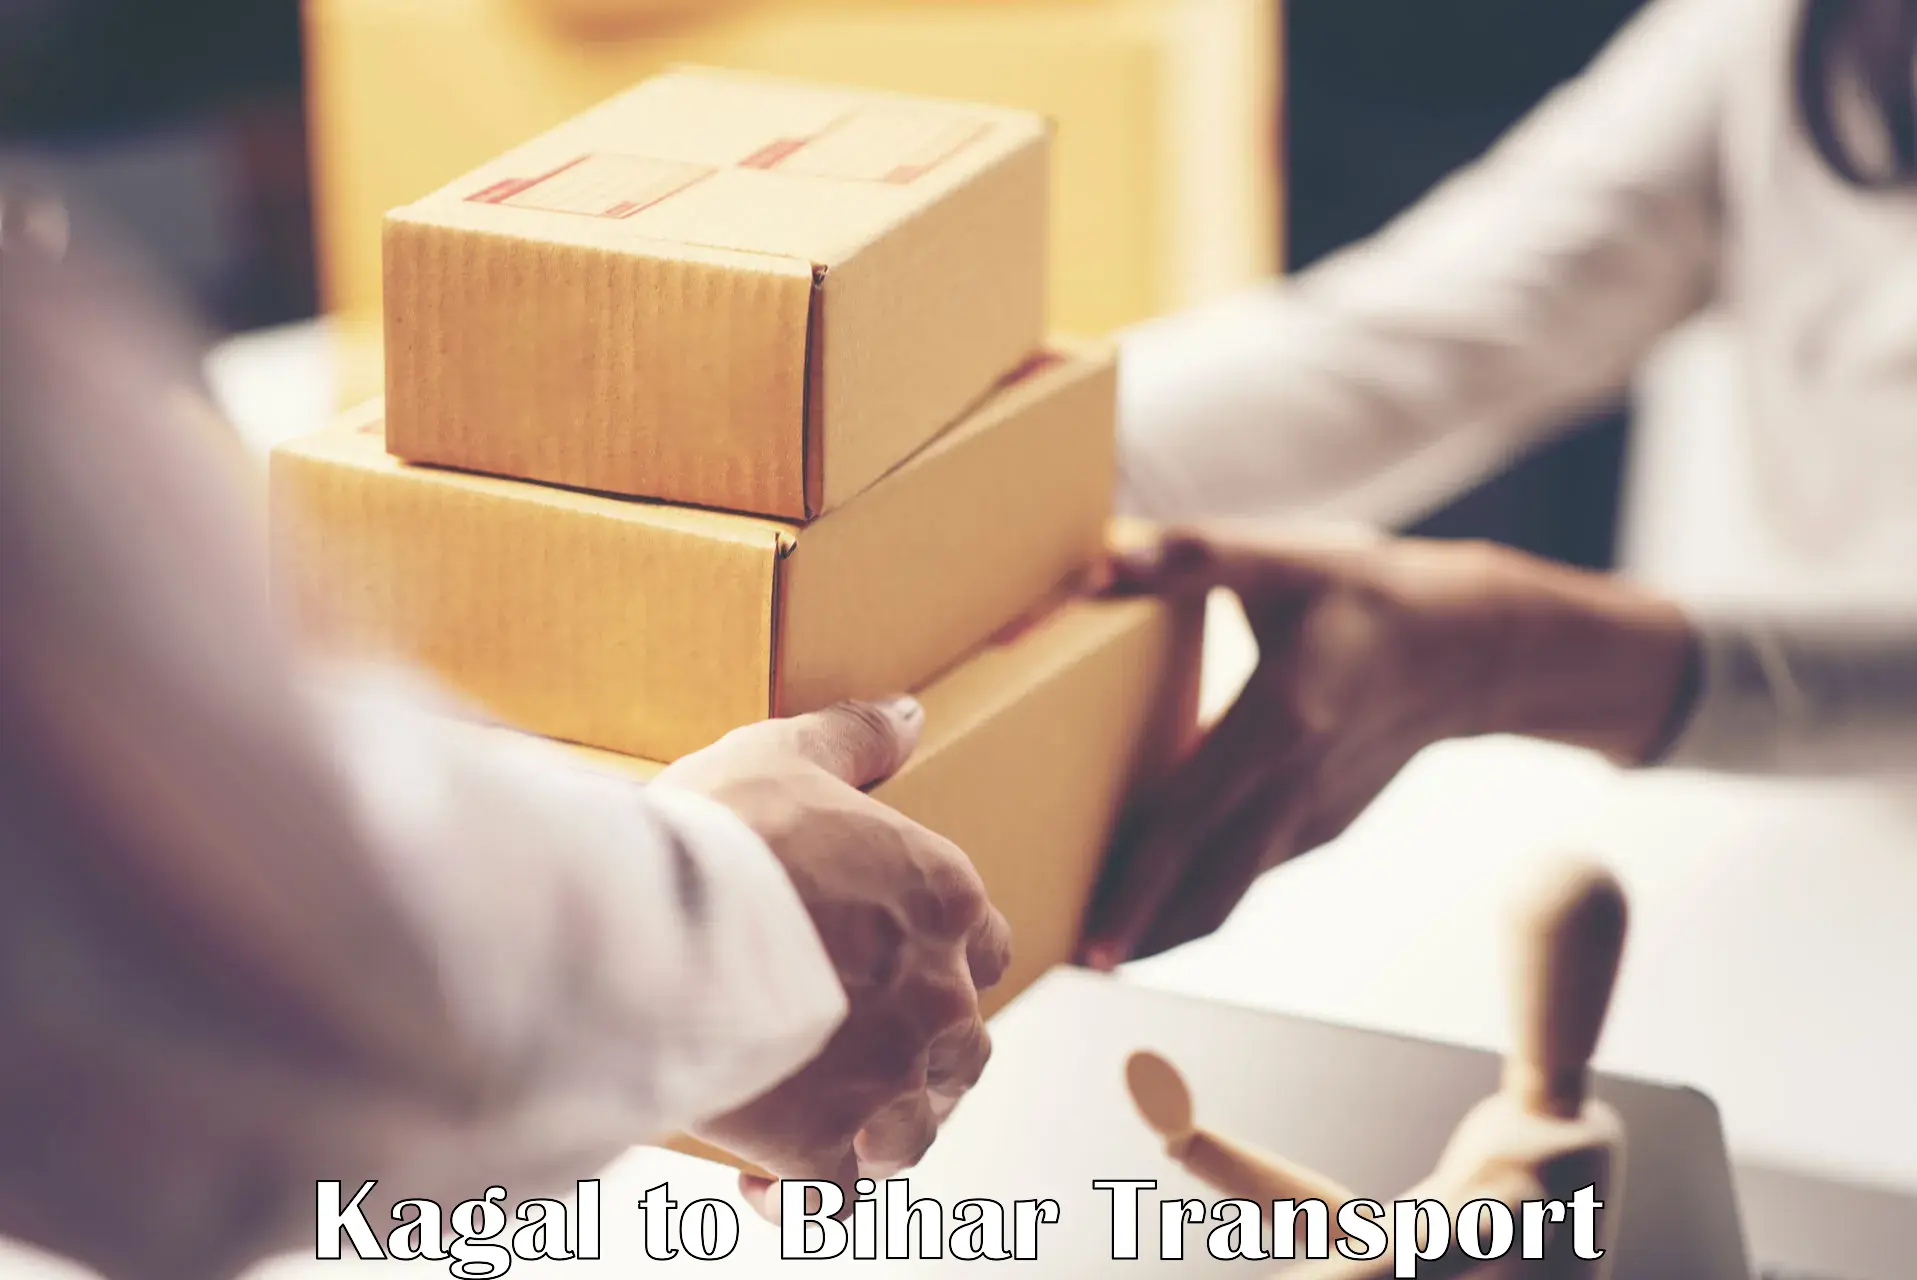 Furniture transport service Kagal to Thakurganj